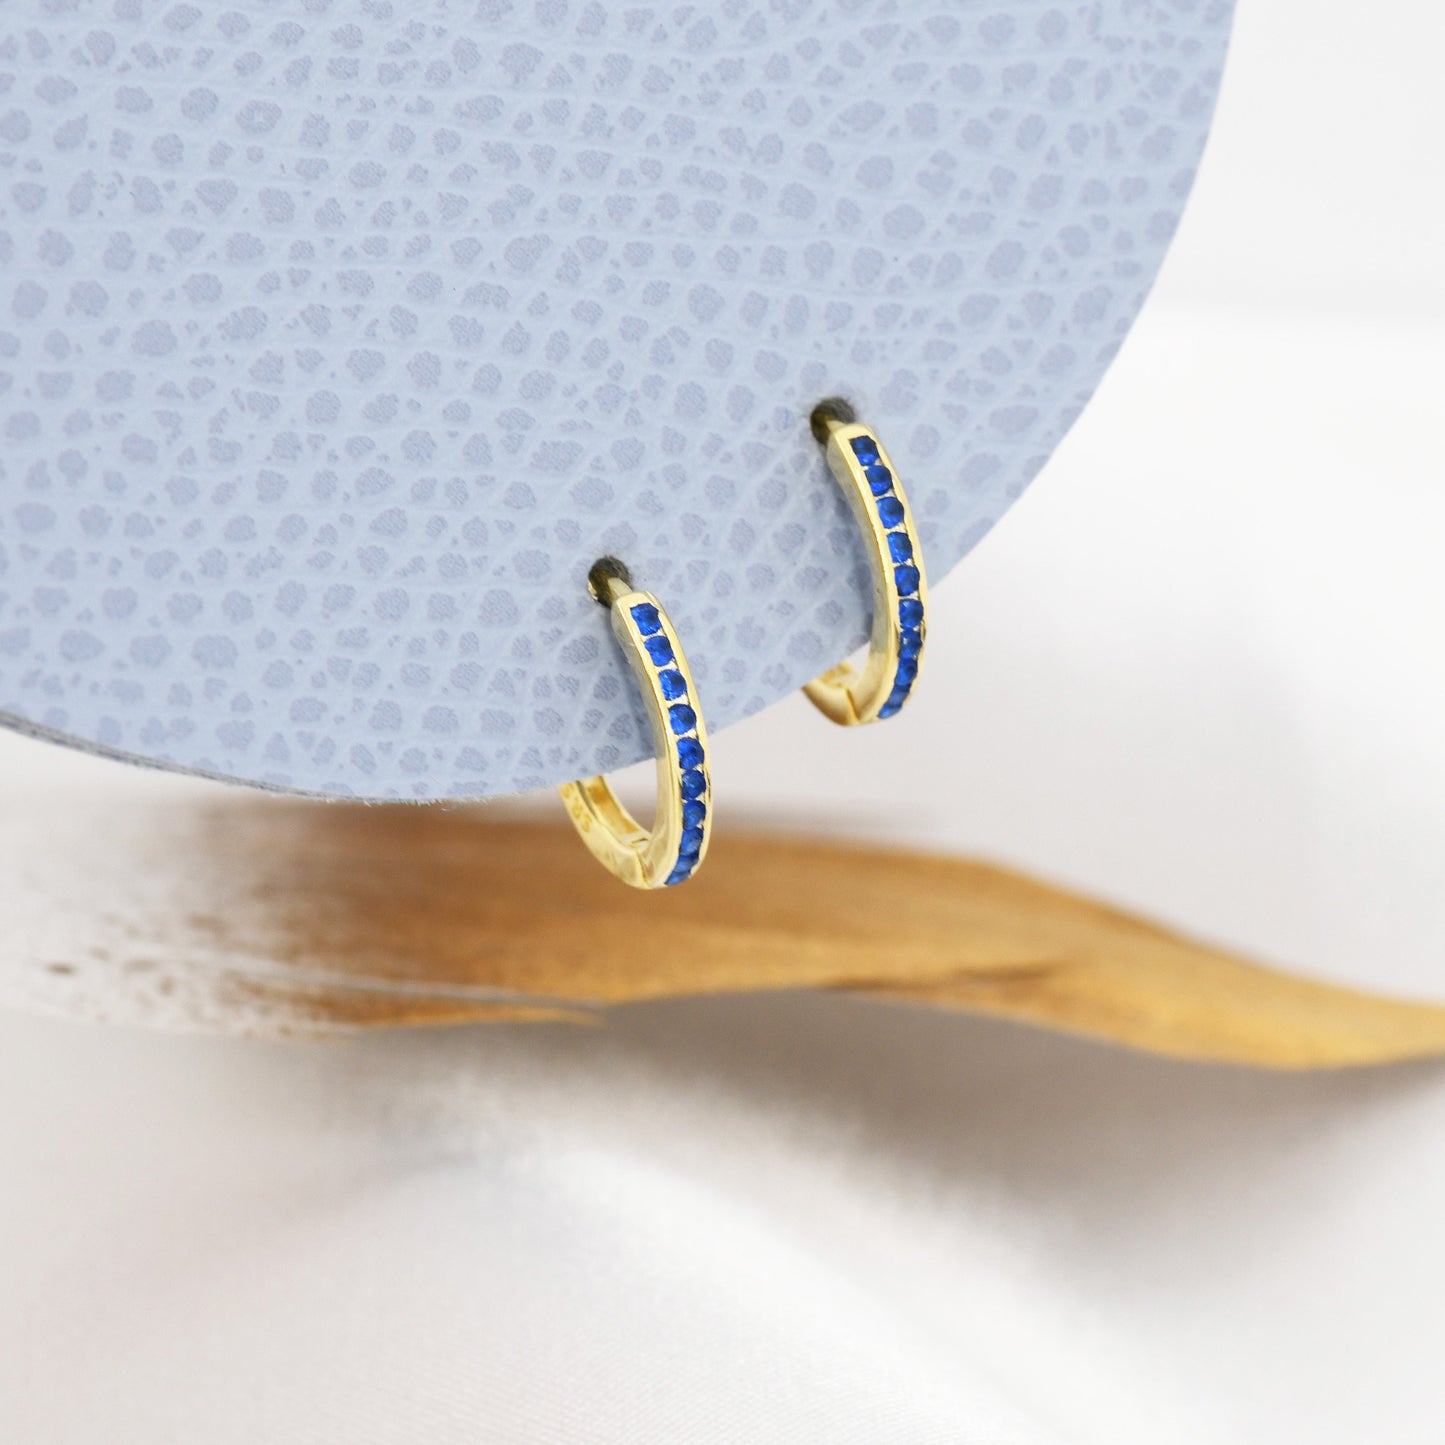 Extra Skinny Sapphire Blue Huggie Hoop in Sterling Silver, Silver or Gold,  8mm Inner Diameter Hoop Earrings, September Birthstone